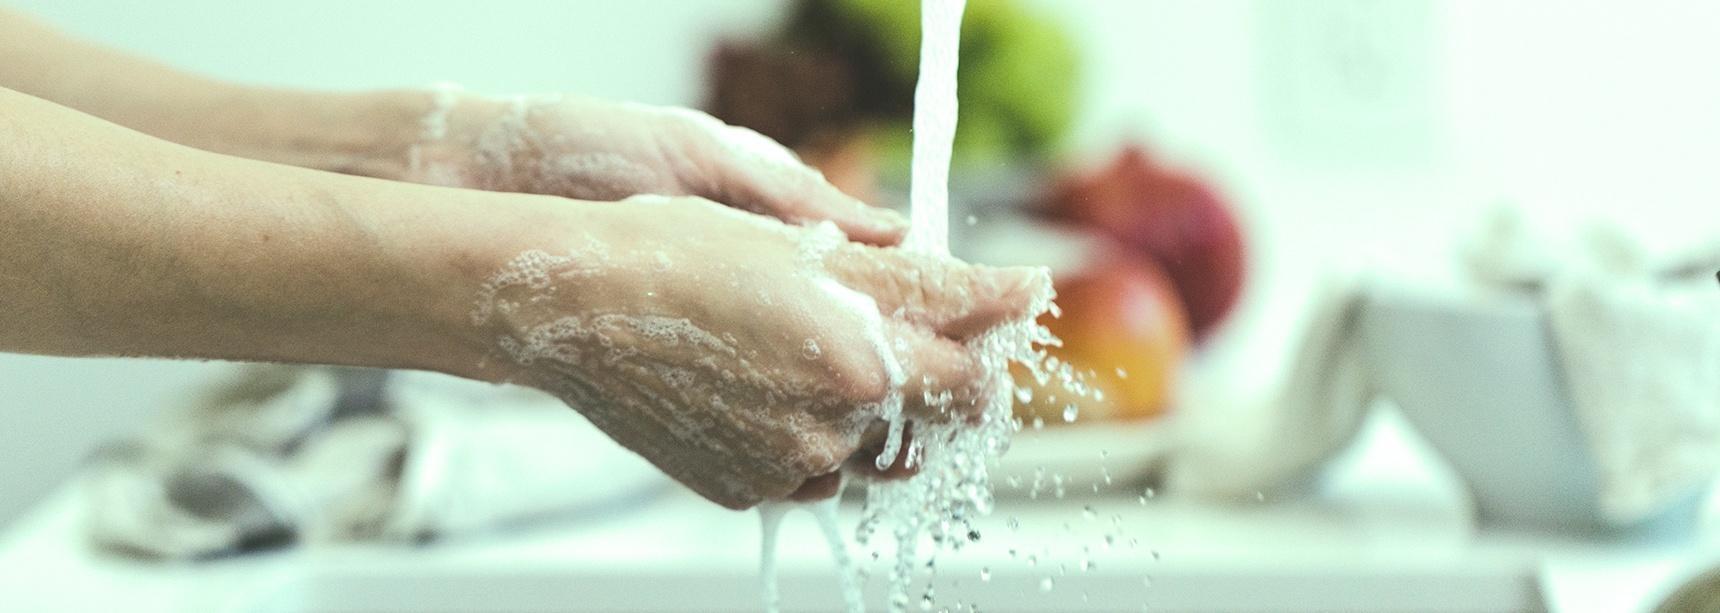 Krótka, naukowa encyklopedia mycia rąk